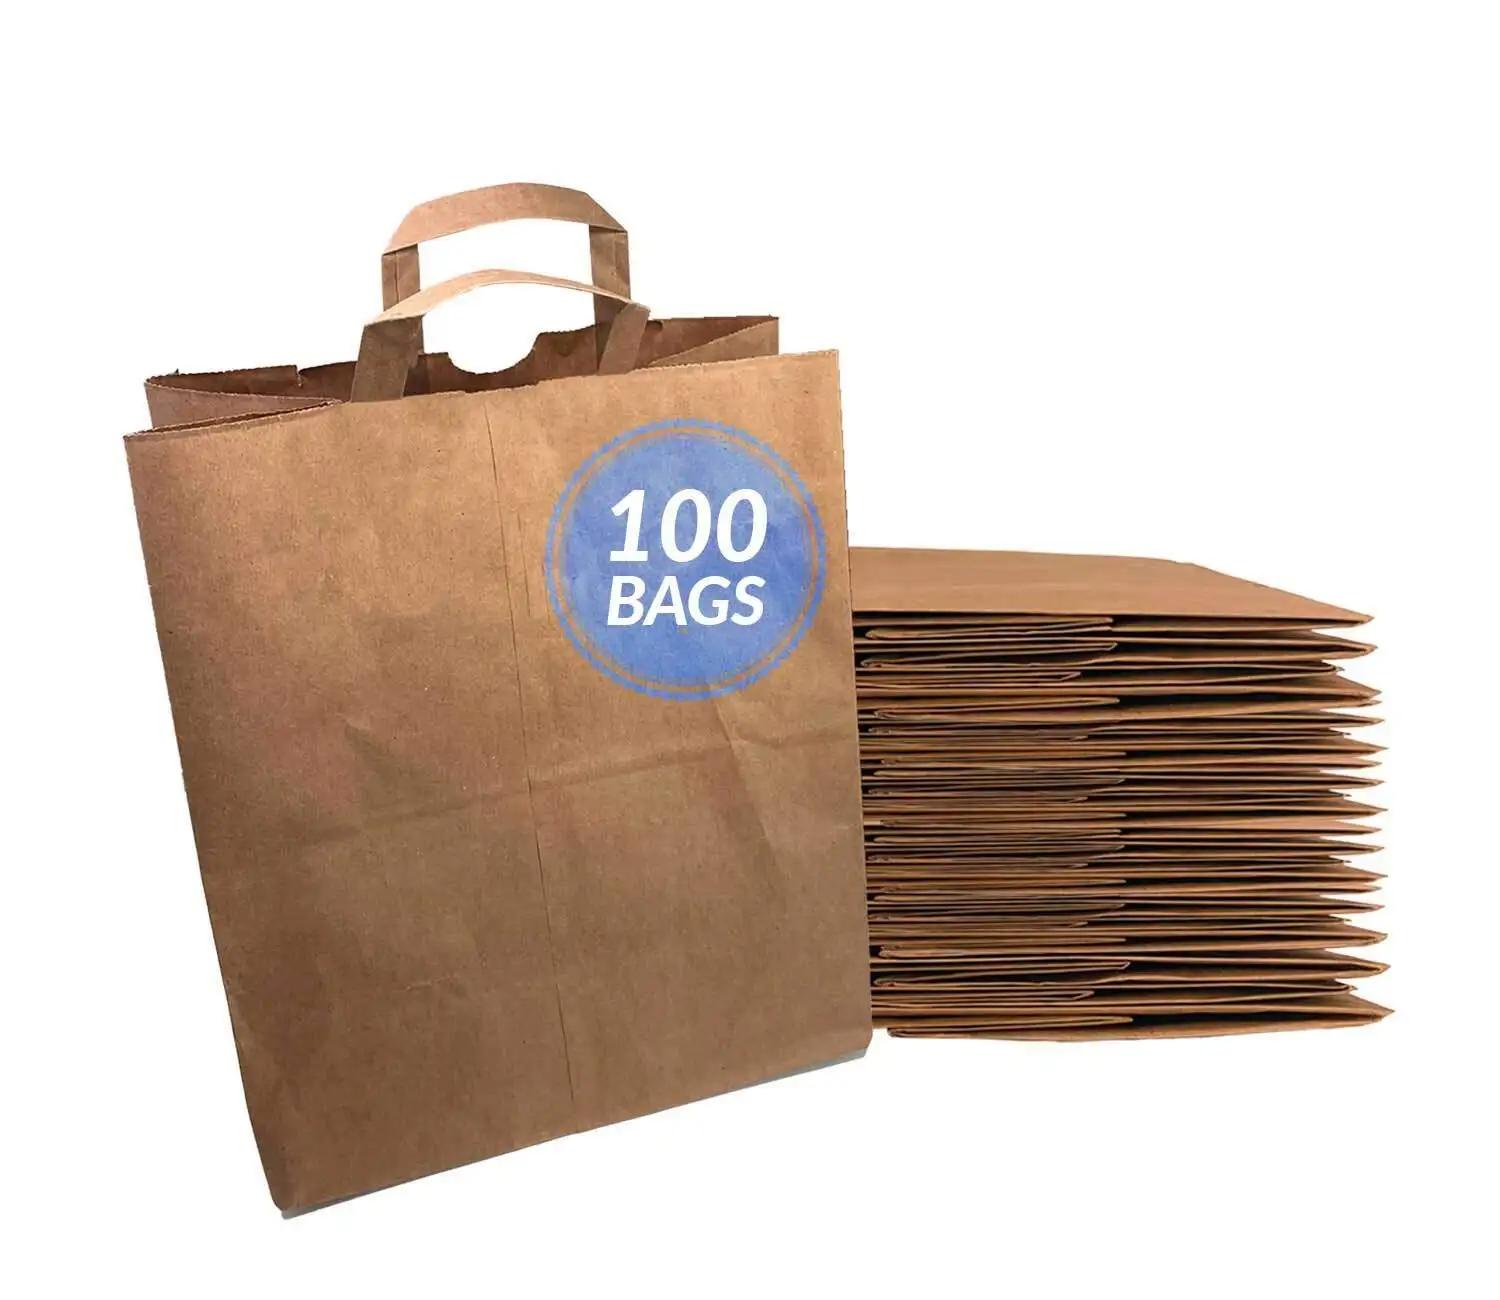 Бумажные продуктовые пакеты с ручками 100 шт. 12 "x 7" x 14 "большие бумажные продуктовые пакеты коричневые крафт-бумажные пакеты для покупок на вынос